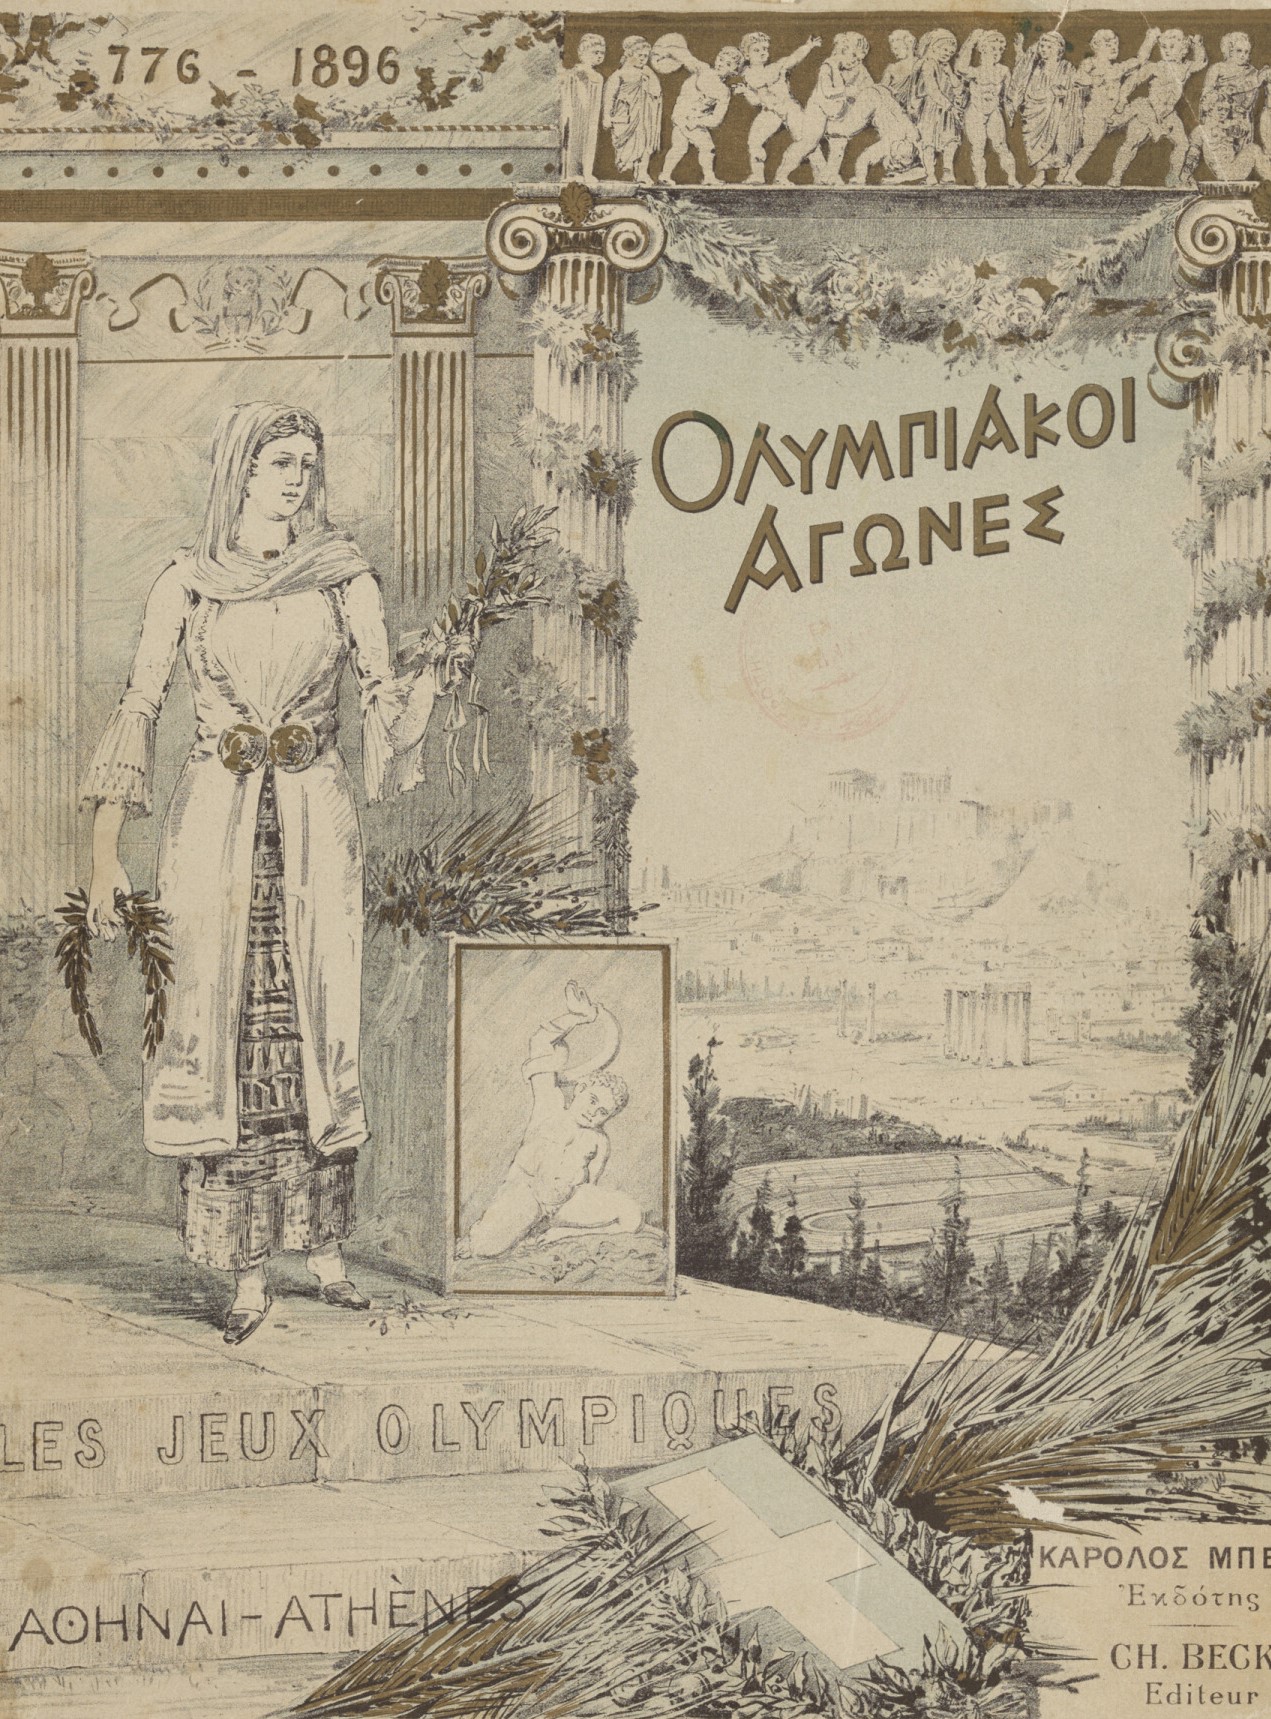 غلاف الألبوم التذكاري لأولمبياد أثينا عام 1896